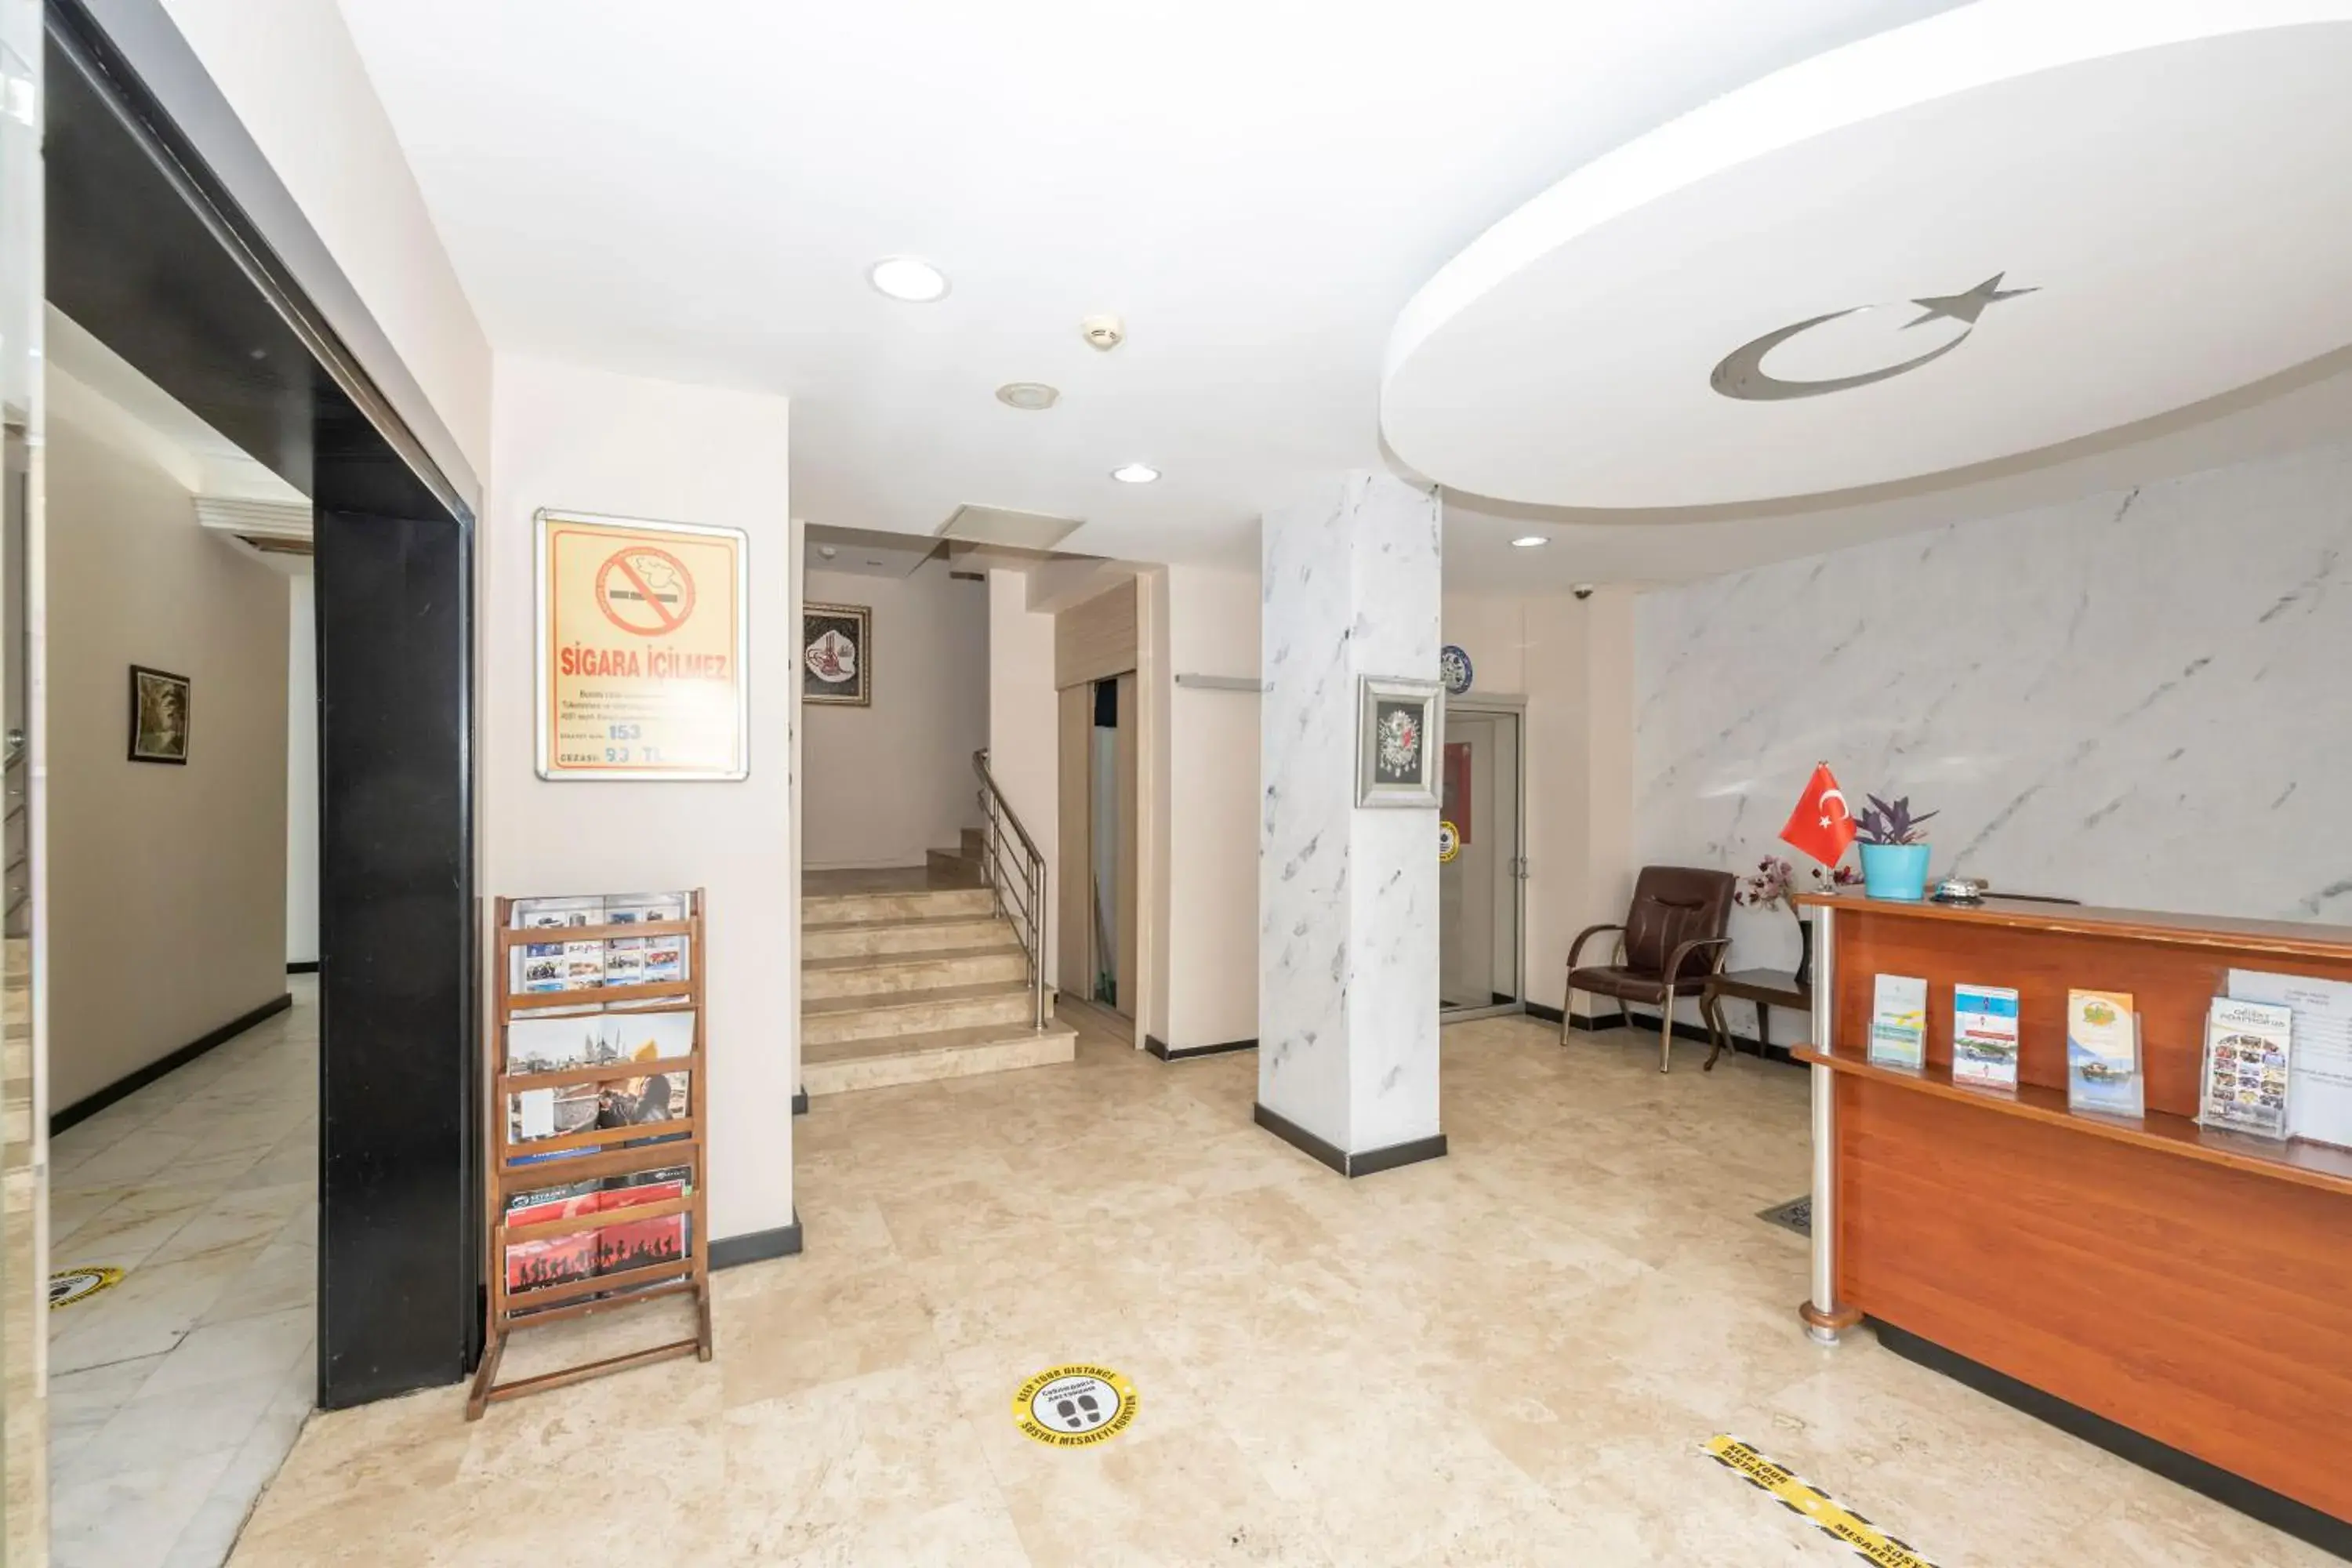 Lobby or reception, Lobby/Reception in Tugra Hotel